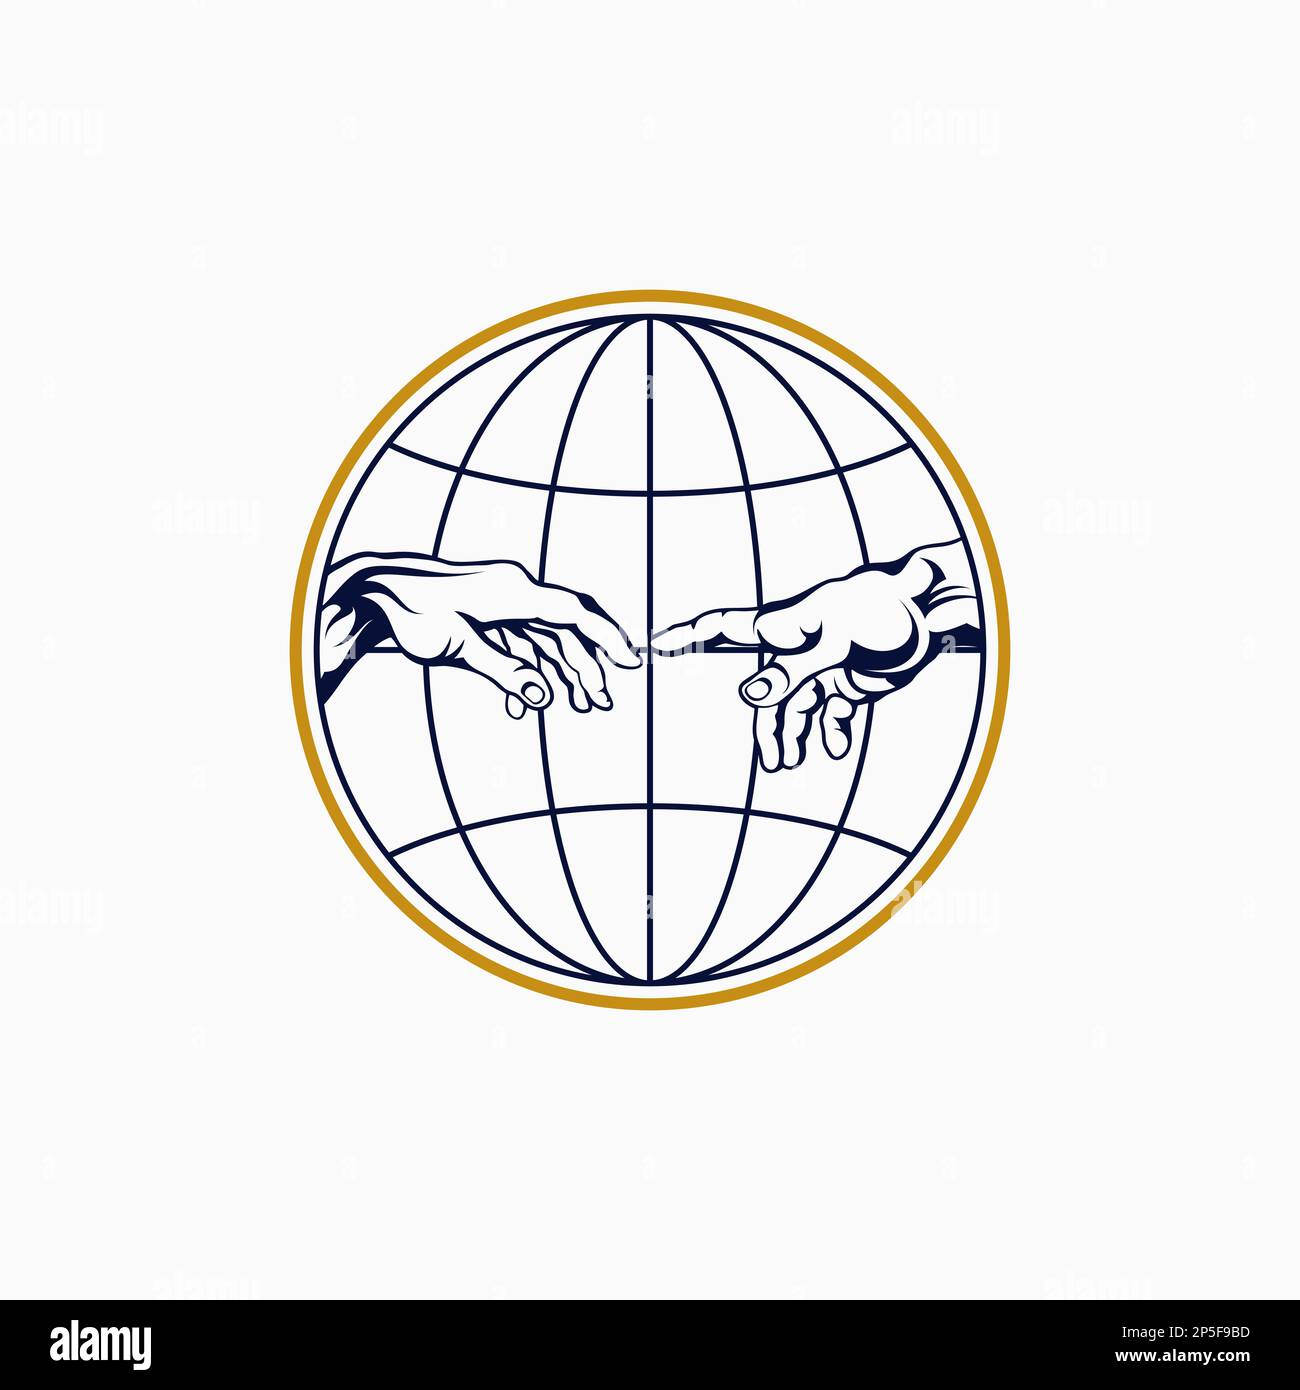 Logo Design Grafikkonzept kreativ Abstraktes Premium-Free-Vektormaterial einzigartig Dual Hands of God and Adam von Michelangelo in Globus Kunst und Religion Stock Vektor